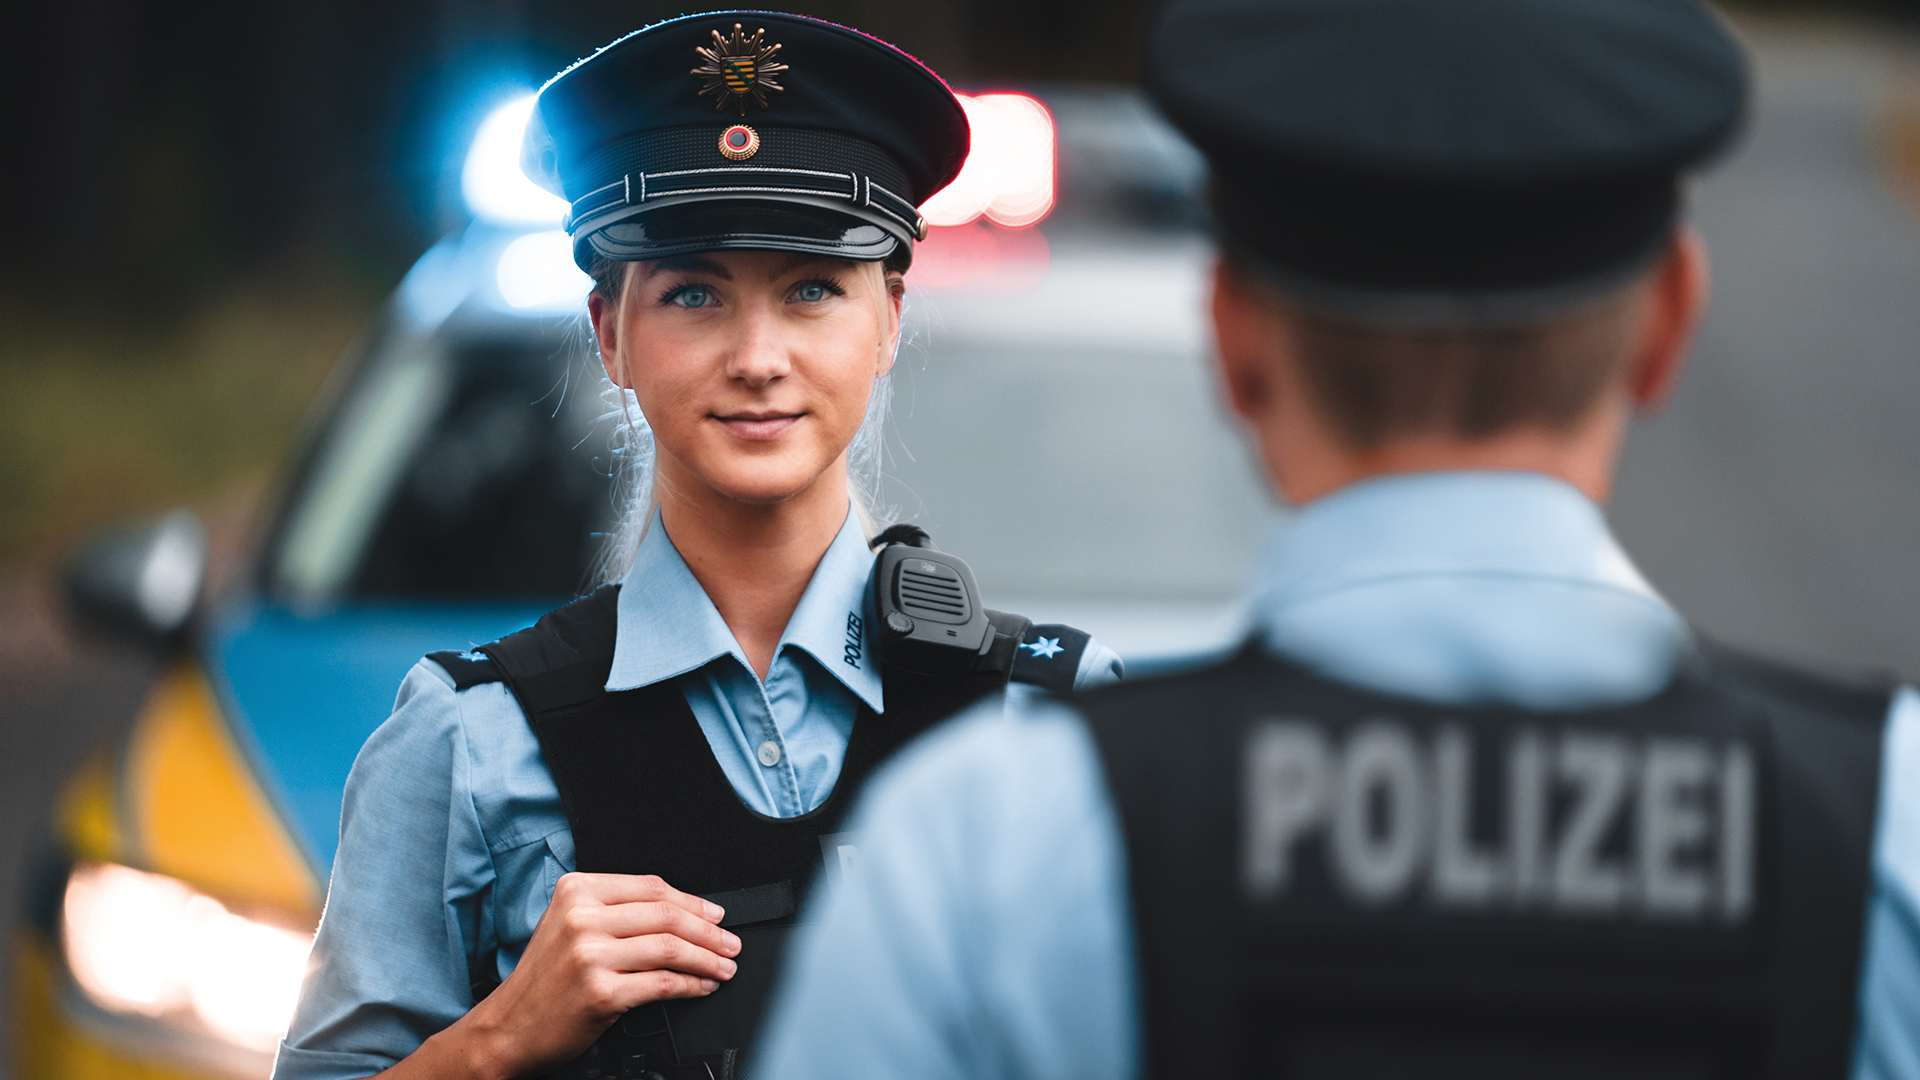 Polizei Sachsen - Polizei Sachsen - Bewerbung für Ausbildung und